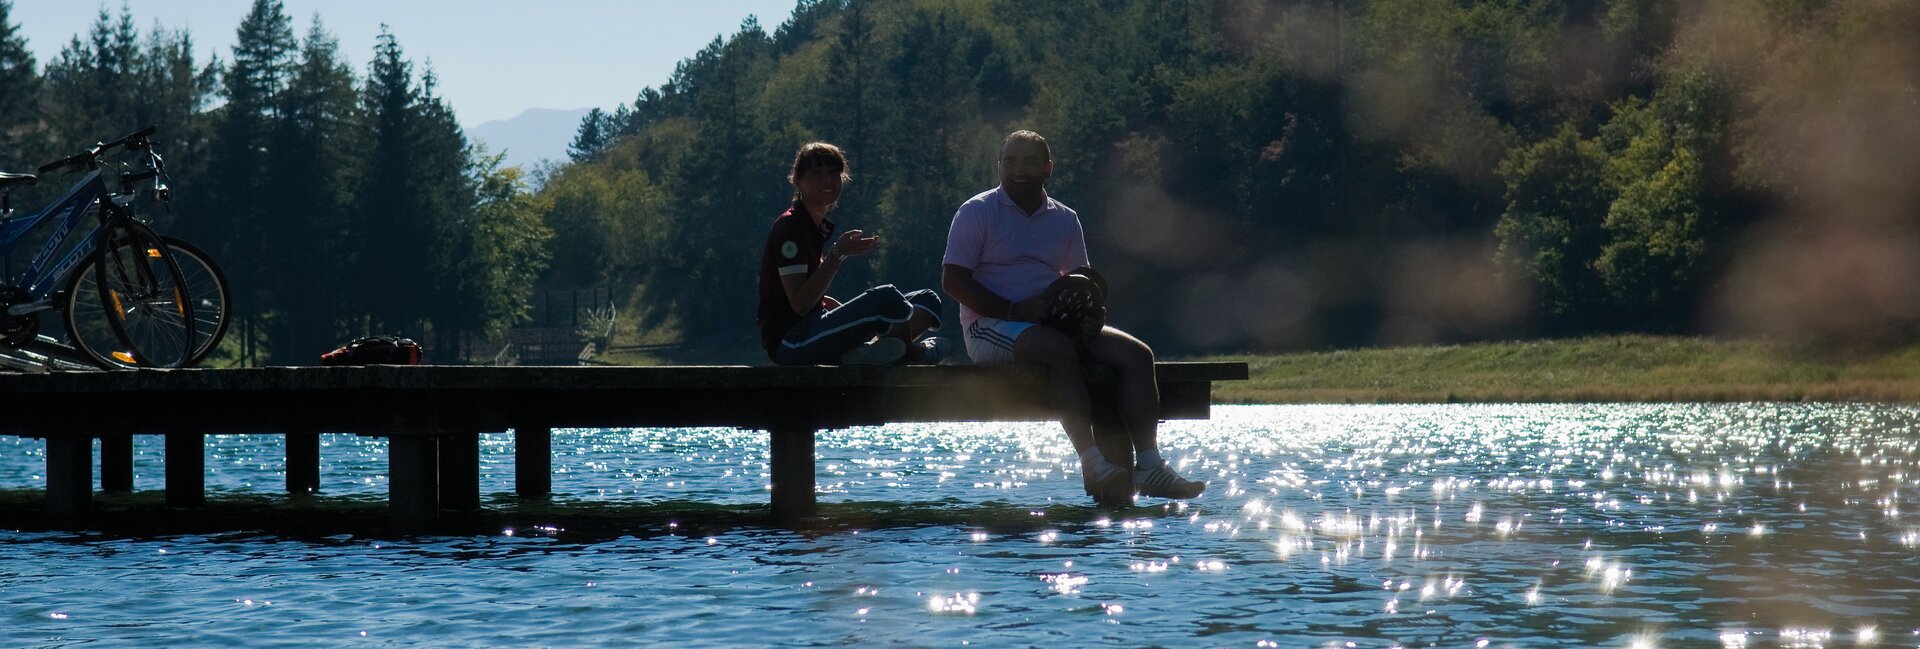 Lago di Nembia - ciclisti in relax